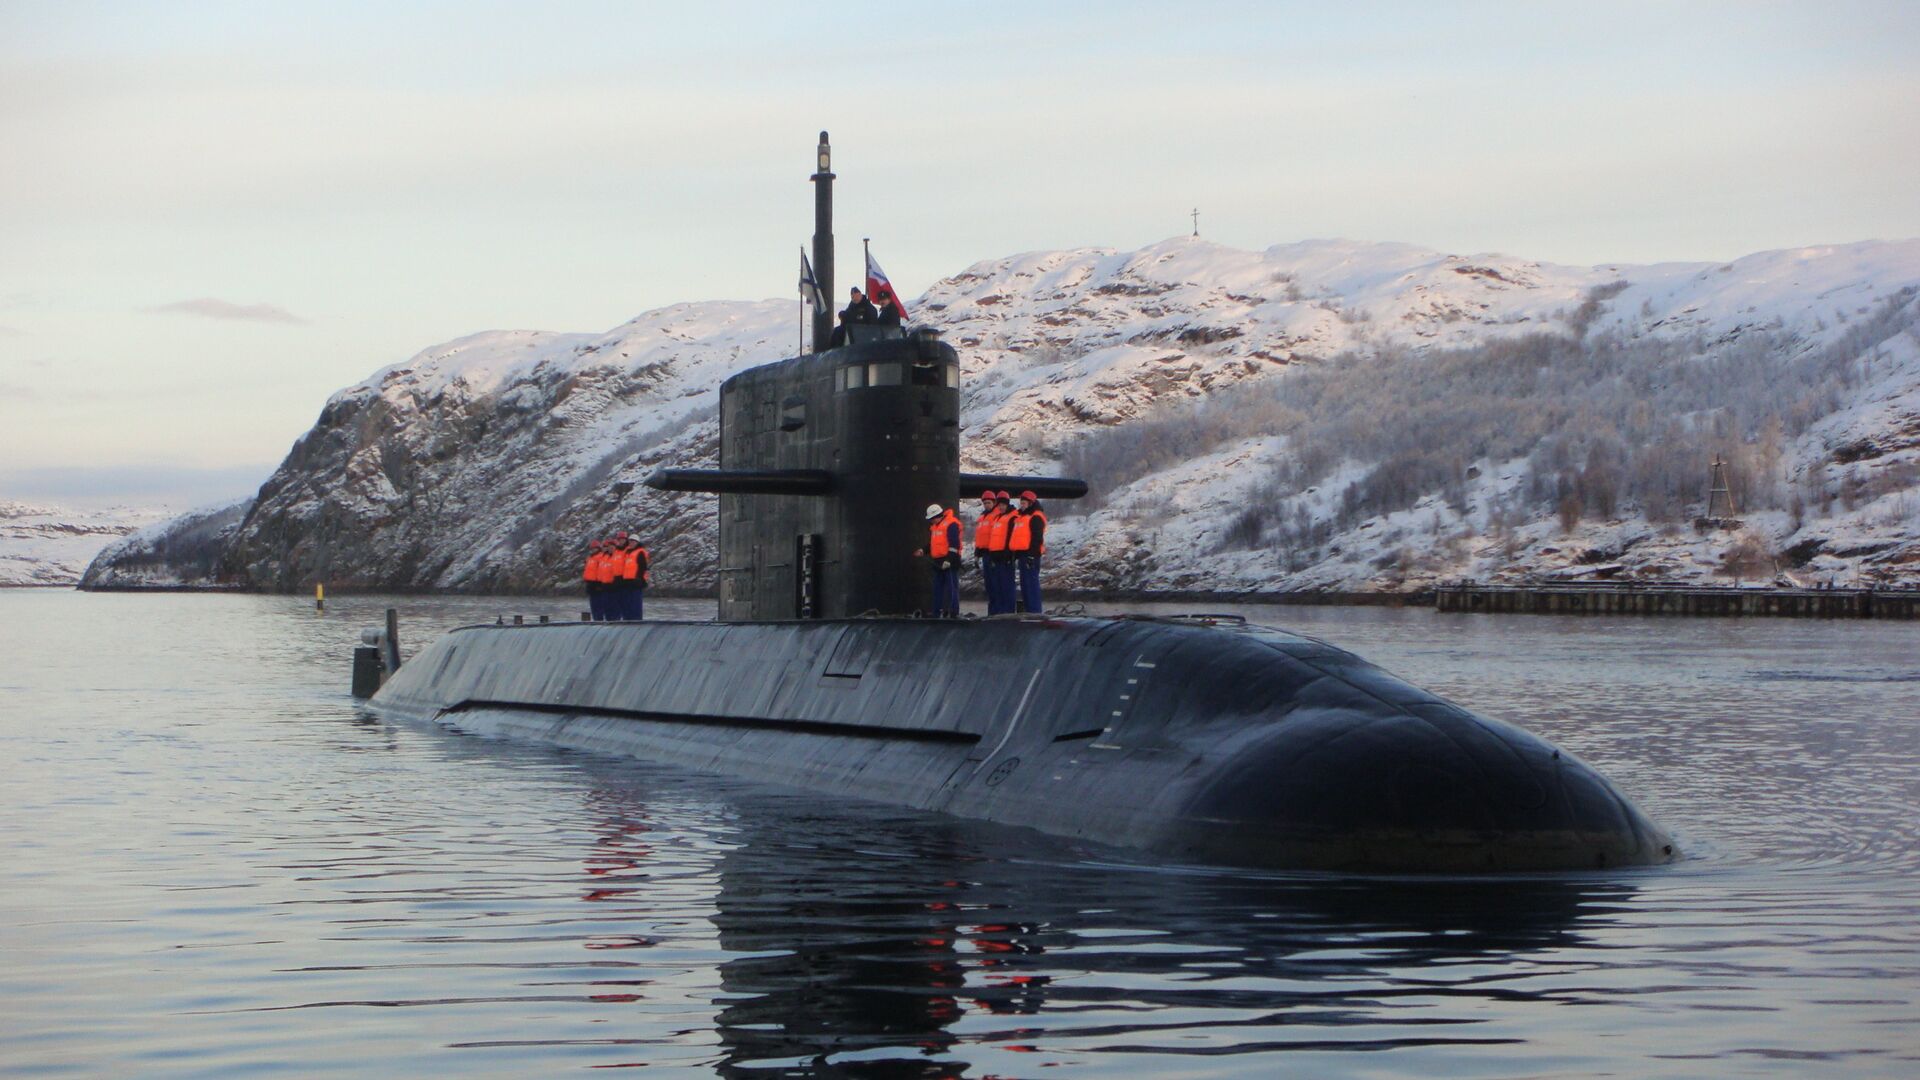 Подводные лодки вмф россии: история создания, названия и классы